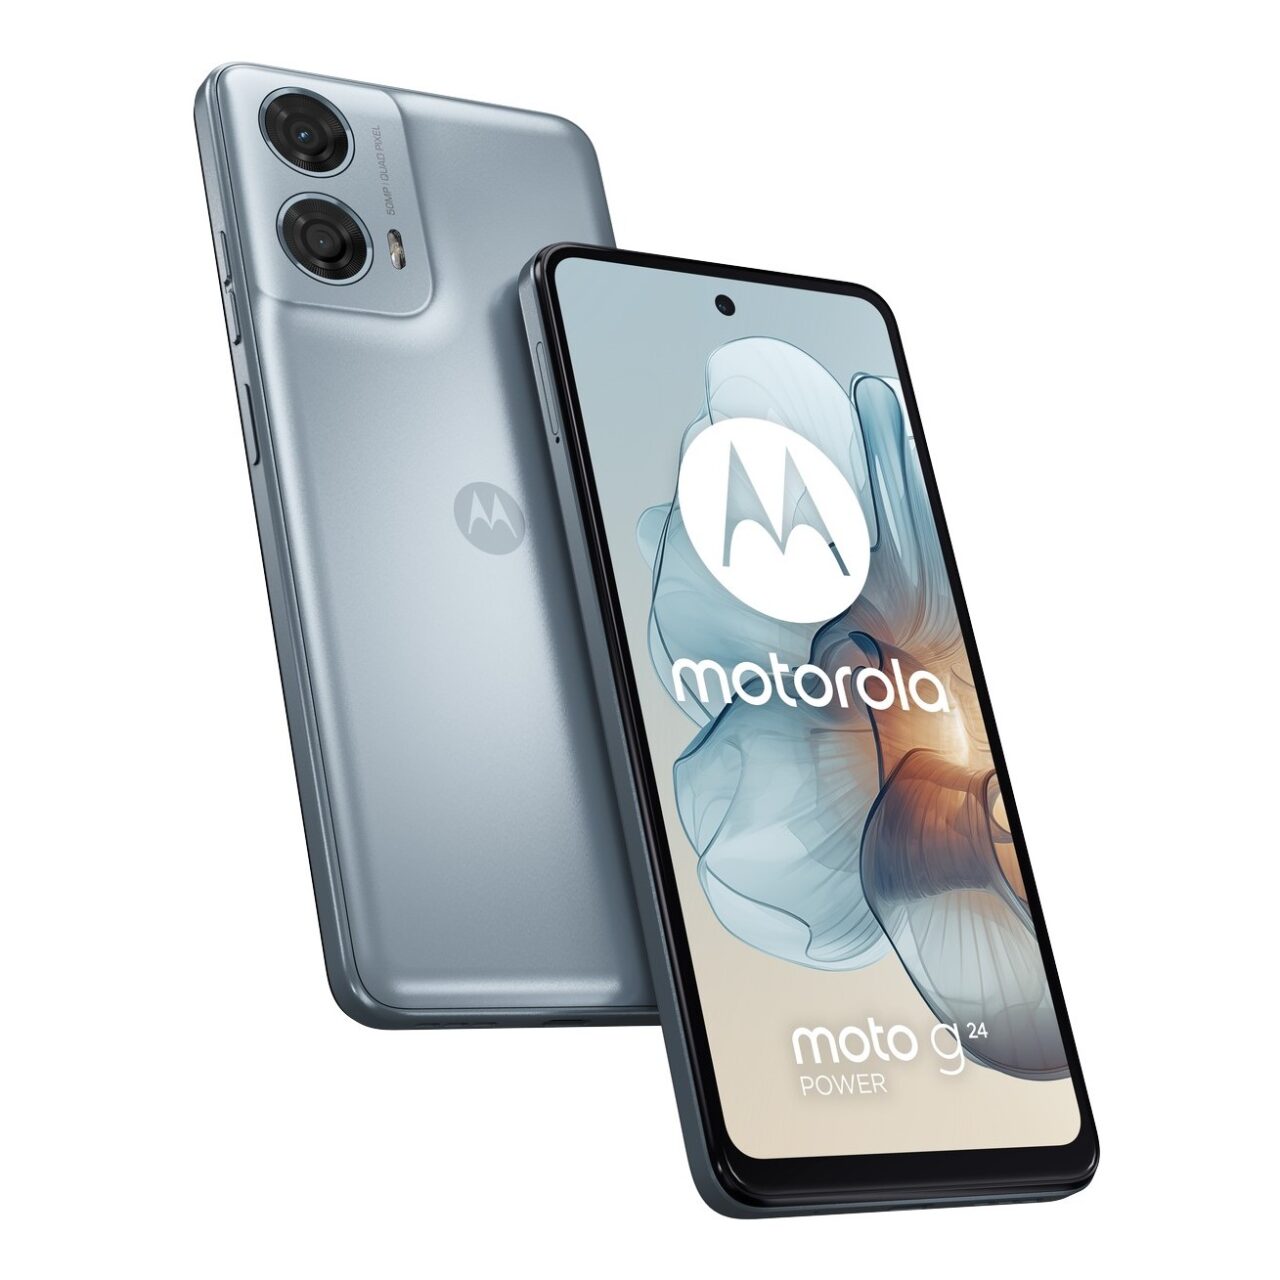 Smartfon Motorola z podwójnym aparatem, w kolorze srebrnym, z logo i nazwą marki na ekranie.